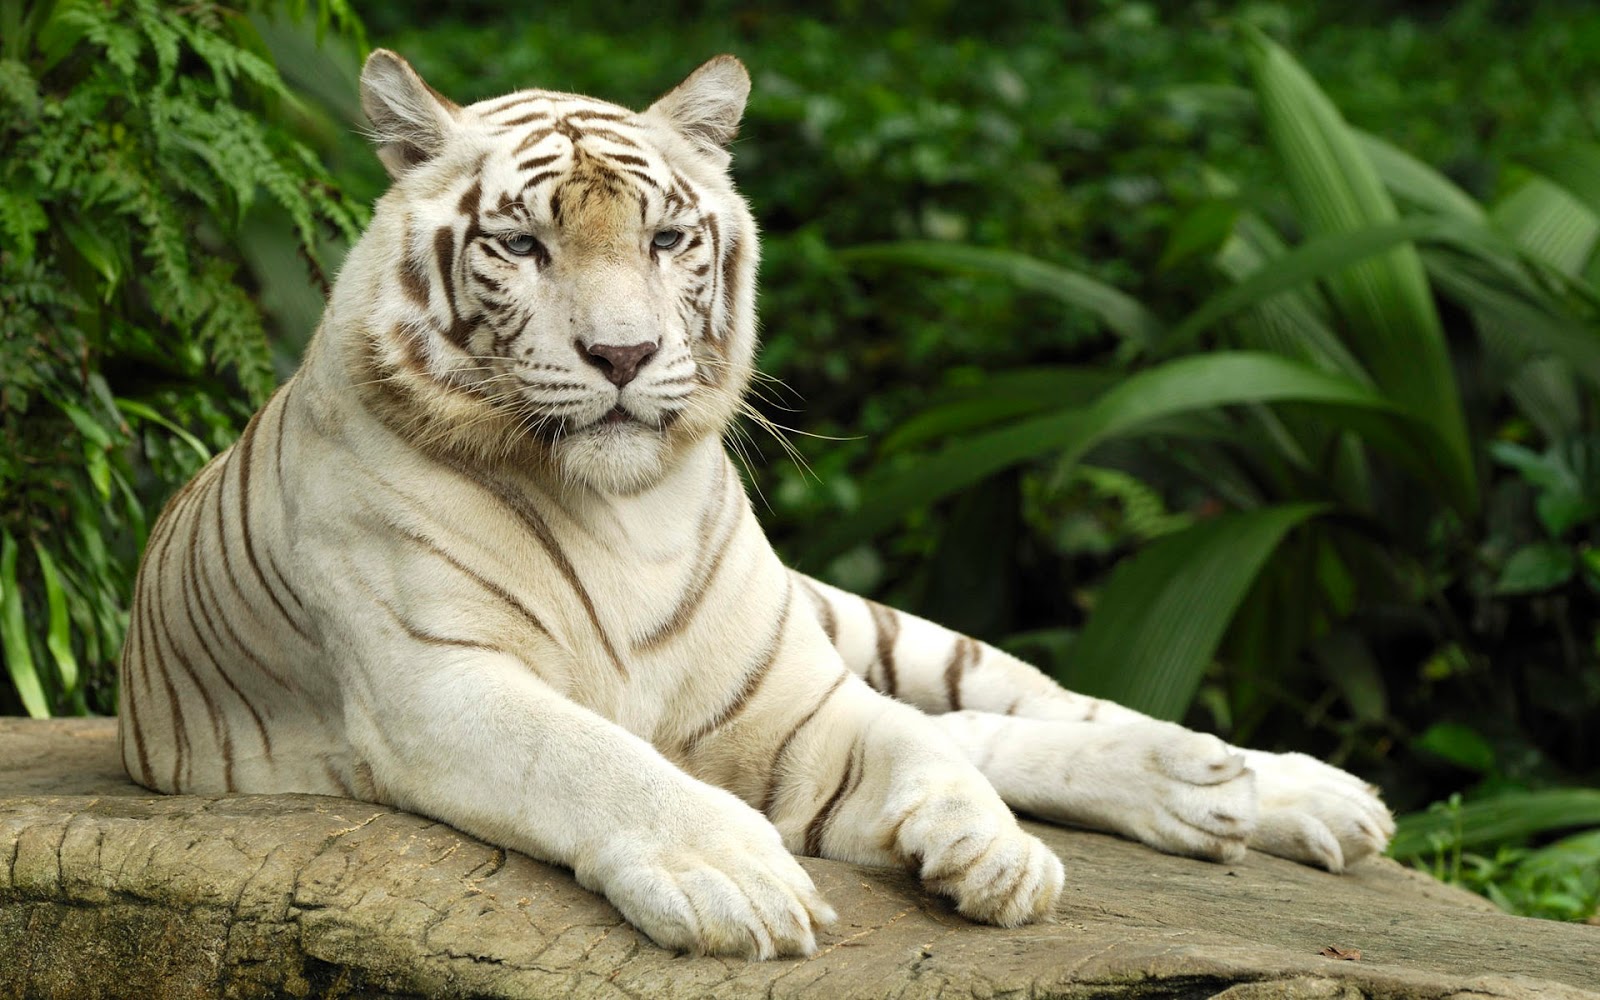 white tiger hd wallpapers 1080p,tiger,mammal,vertebrate,bengal tiger,terrestrial animal